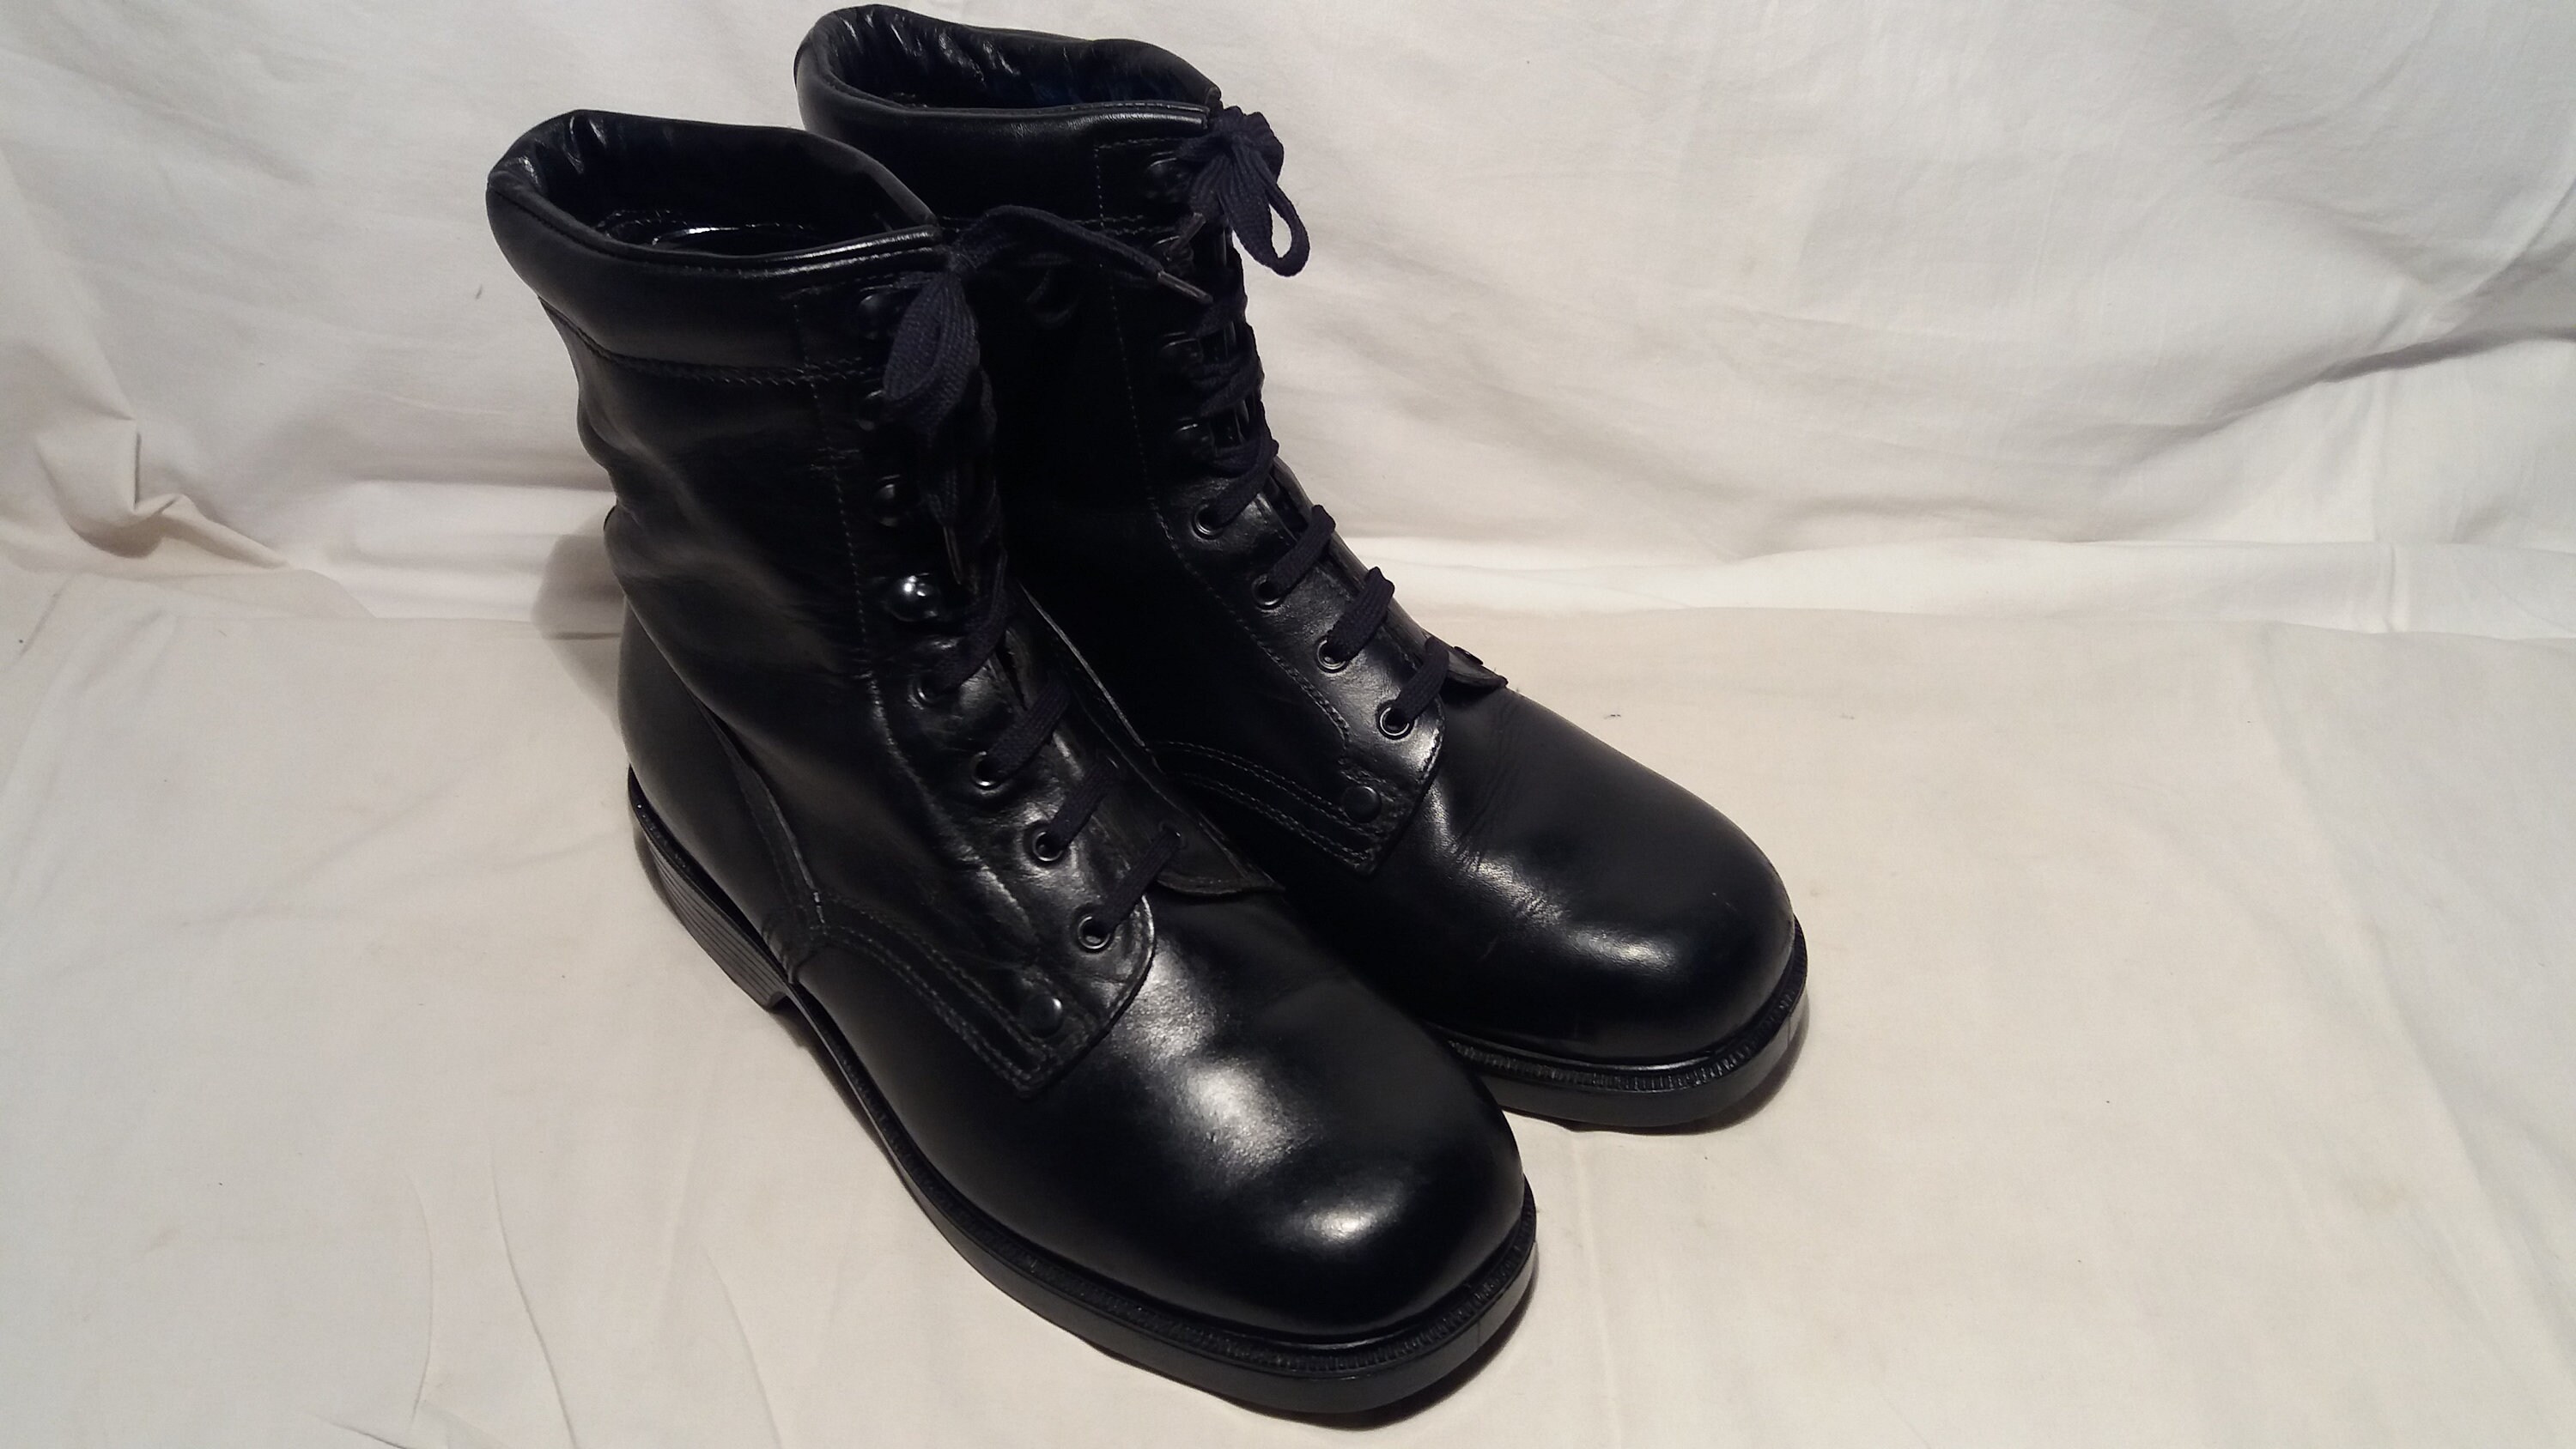 Zapatos Zapatos para hombre Botas Botas de trabajo y estilo militar Botas de combate para hombres y mujeres Cuero a prueba de agua Negro Elegante Combate Ejército Motociclista Guerra Aventura Airsoft táctico 